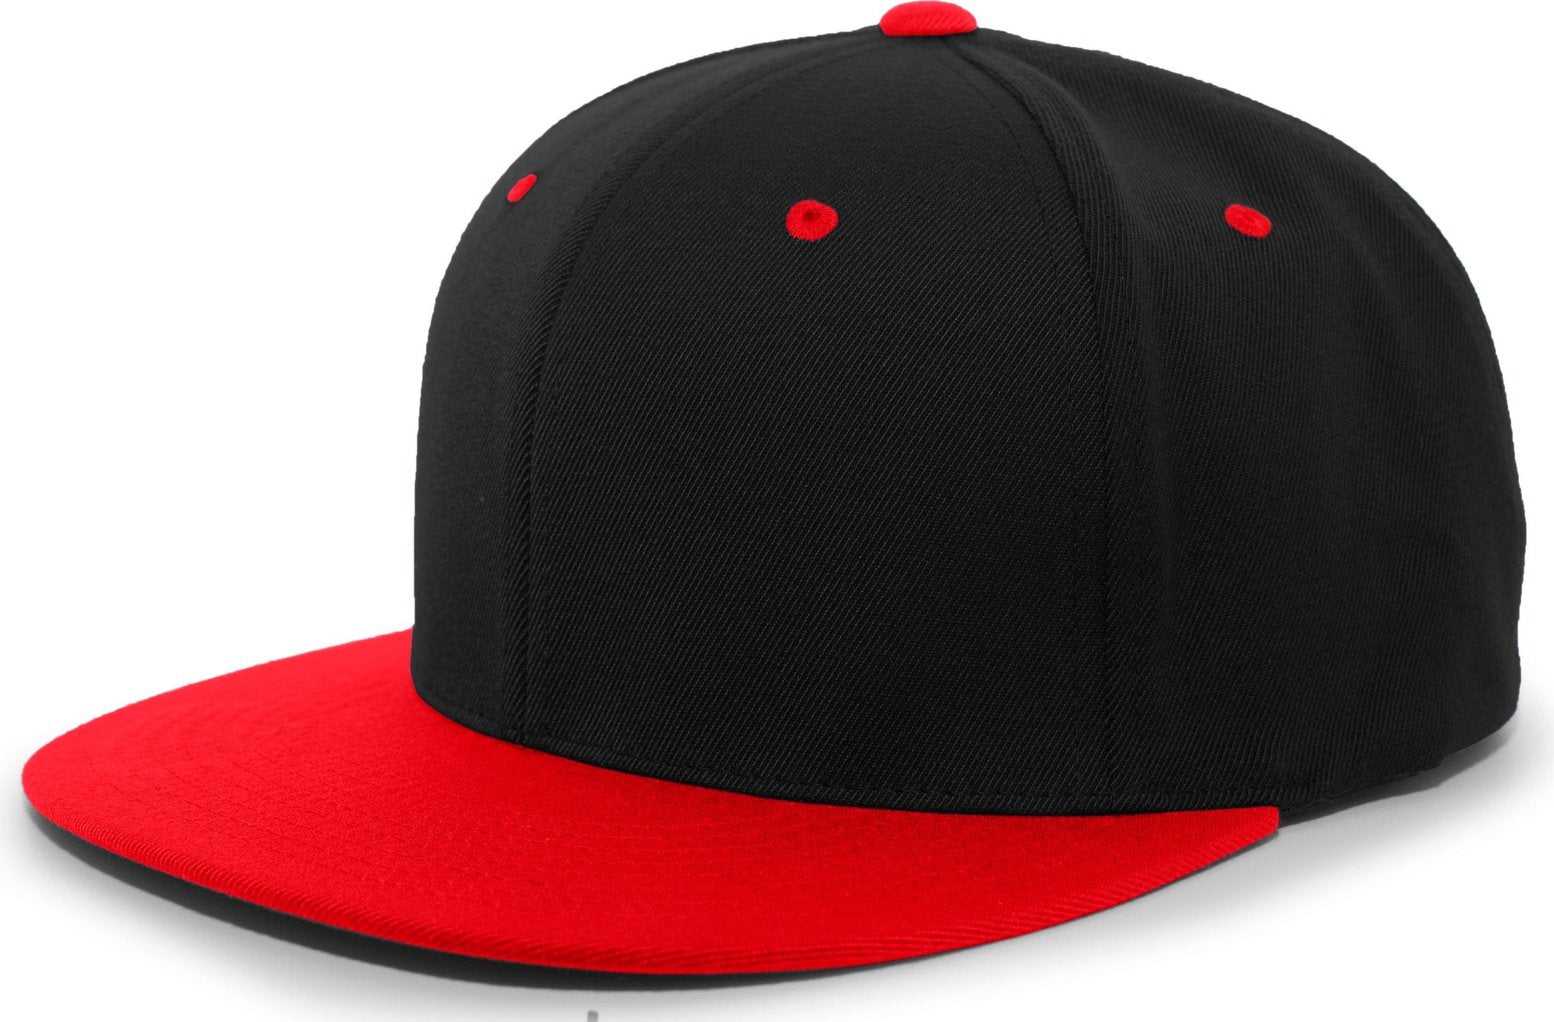 Pacific Headwear 8D5 A/C?ý Performance D-Series Flexfit Cap - Black Red - HIT a Double